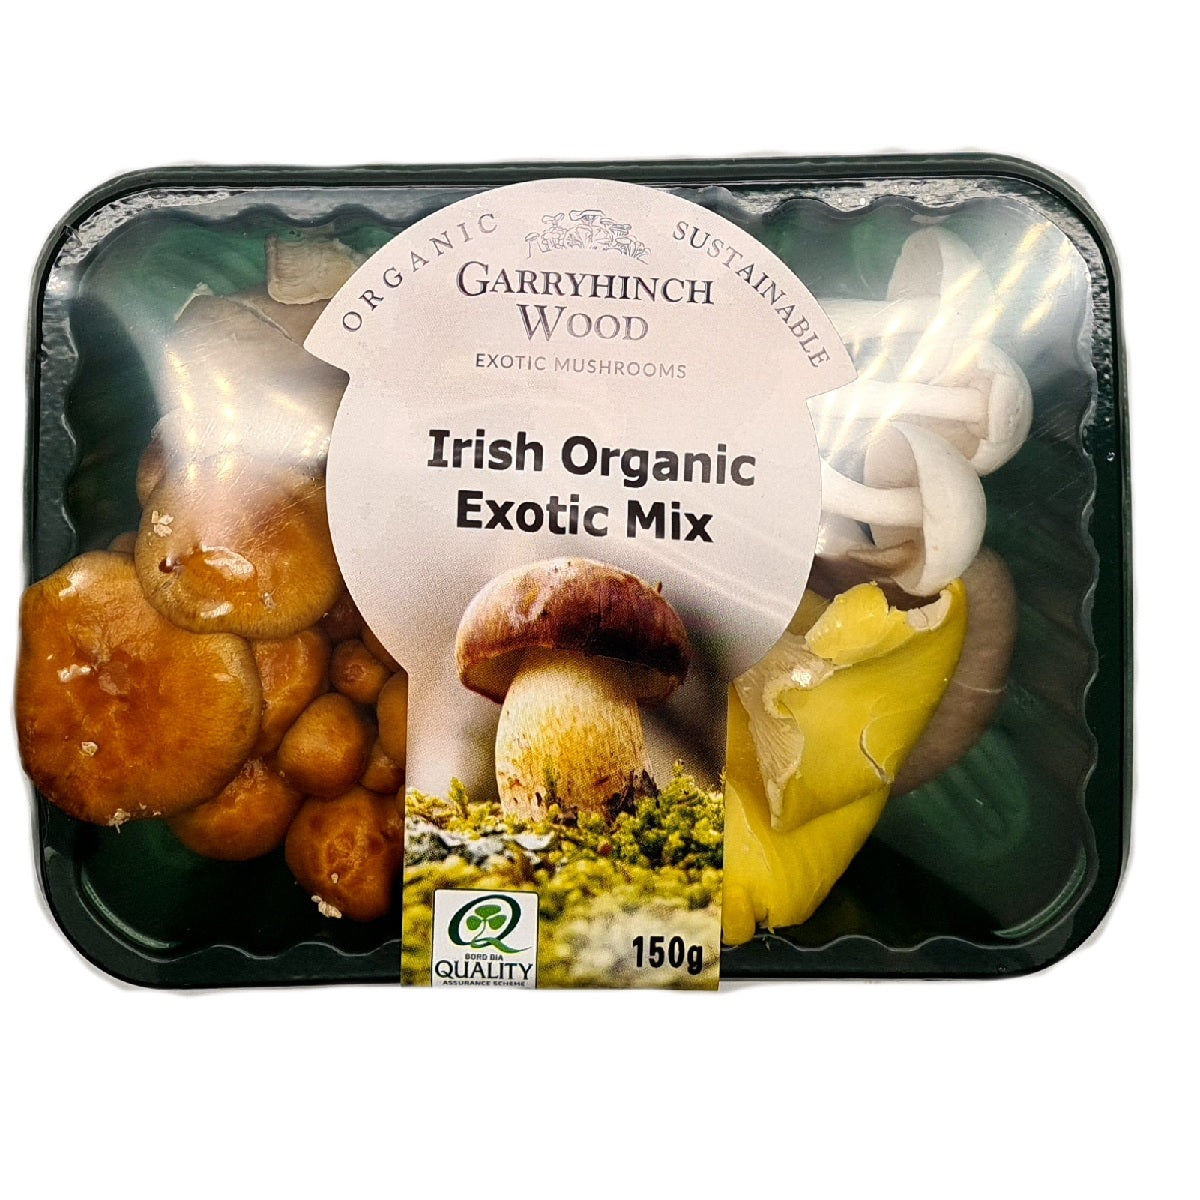 Garryhinch Wood Exotic Mushrooms Irish Organic Exotic Mix 150g